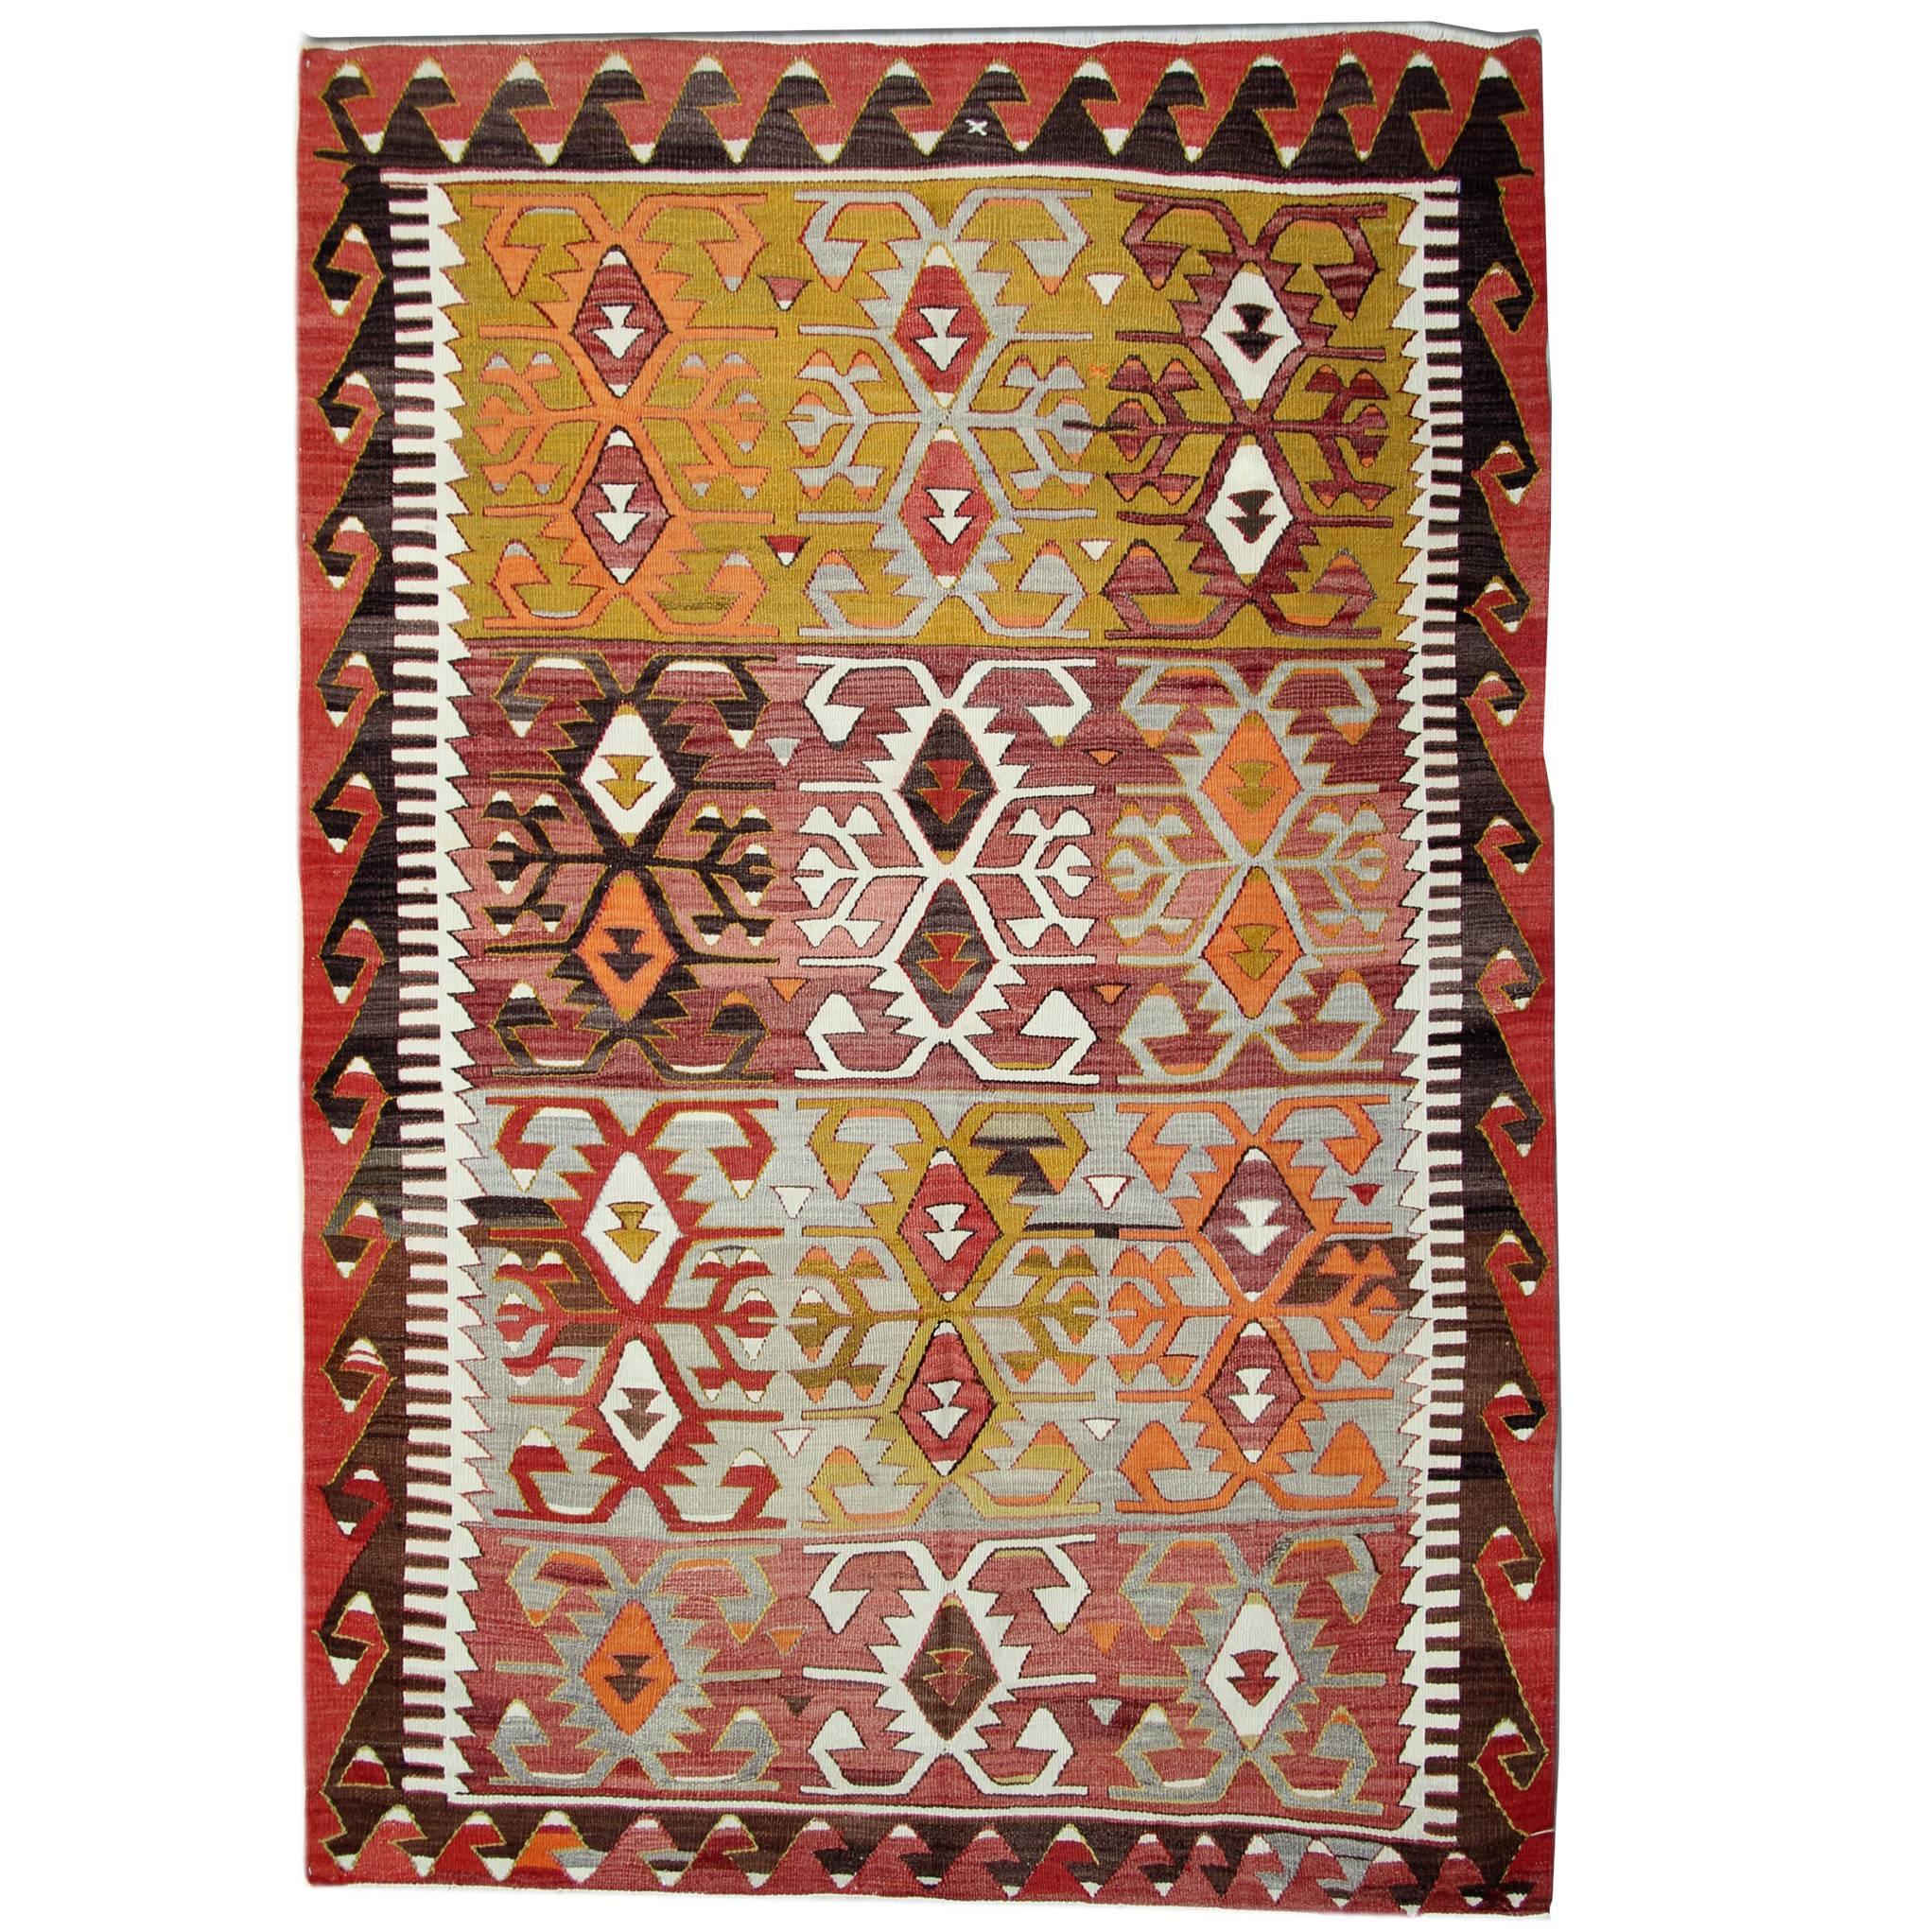 Tapis Kilim anciens, tapis traditionnels orientaux, tapis turcs faits à la main, en vente